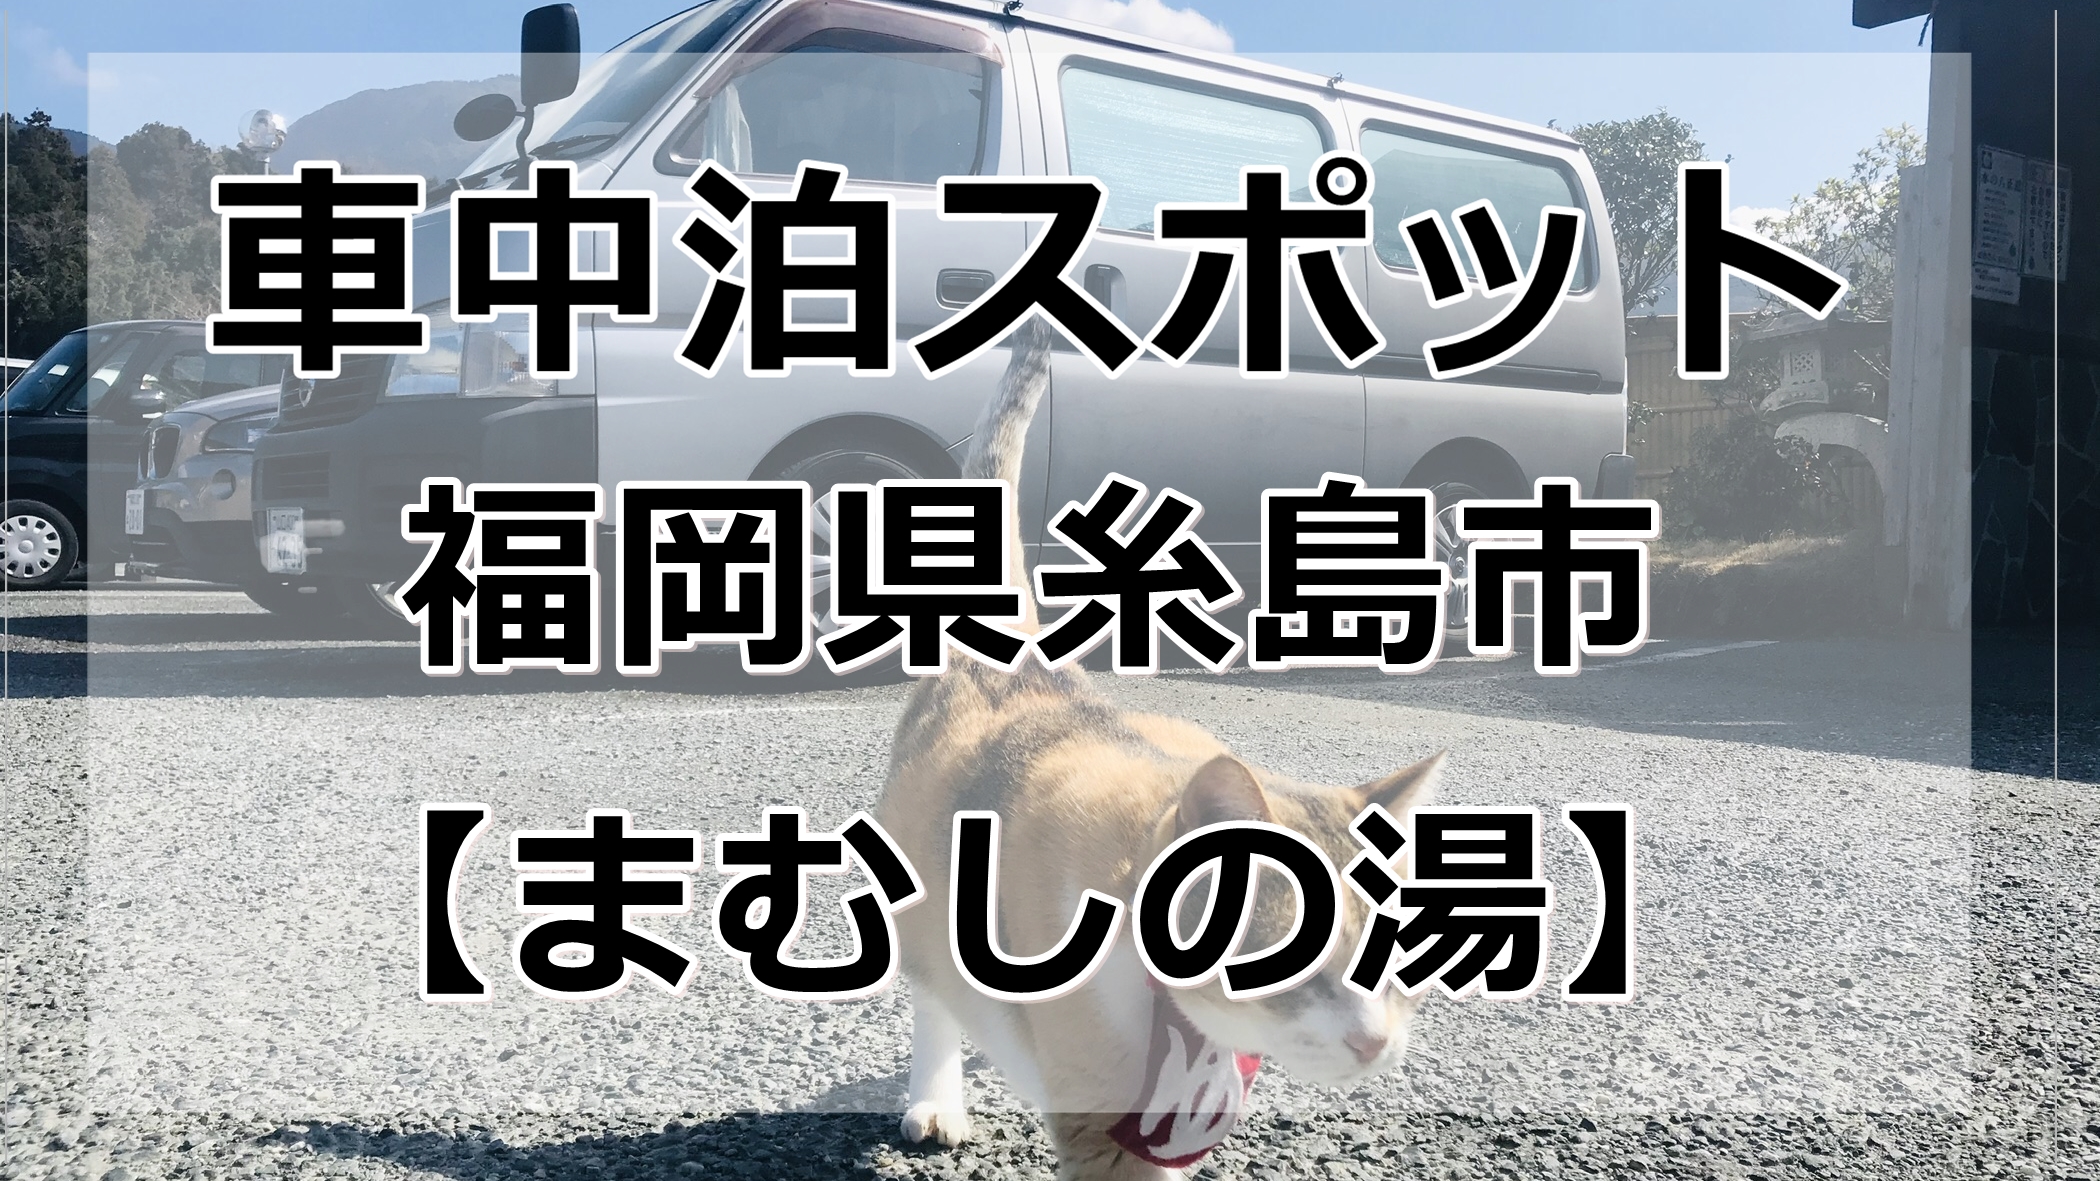 糸島 まむしの湯で車中泊情報 看板猫がとにかくかわいい 車中泊女子 初心者向けバンライフブログ